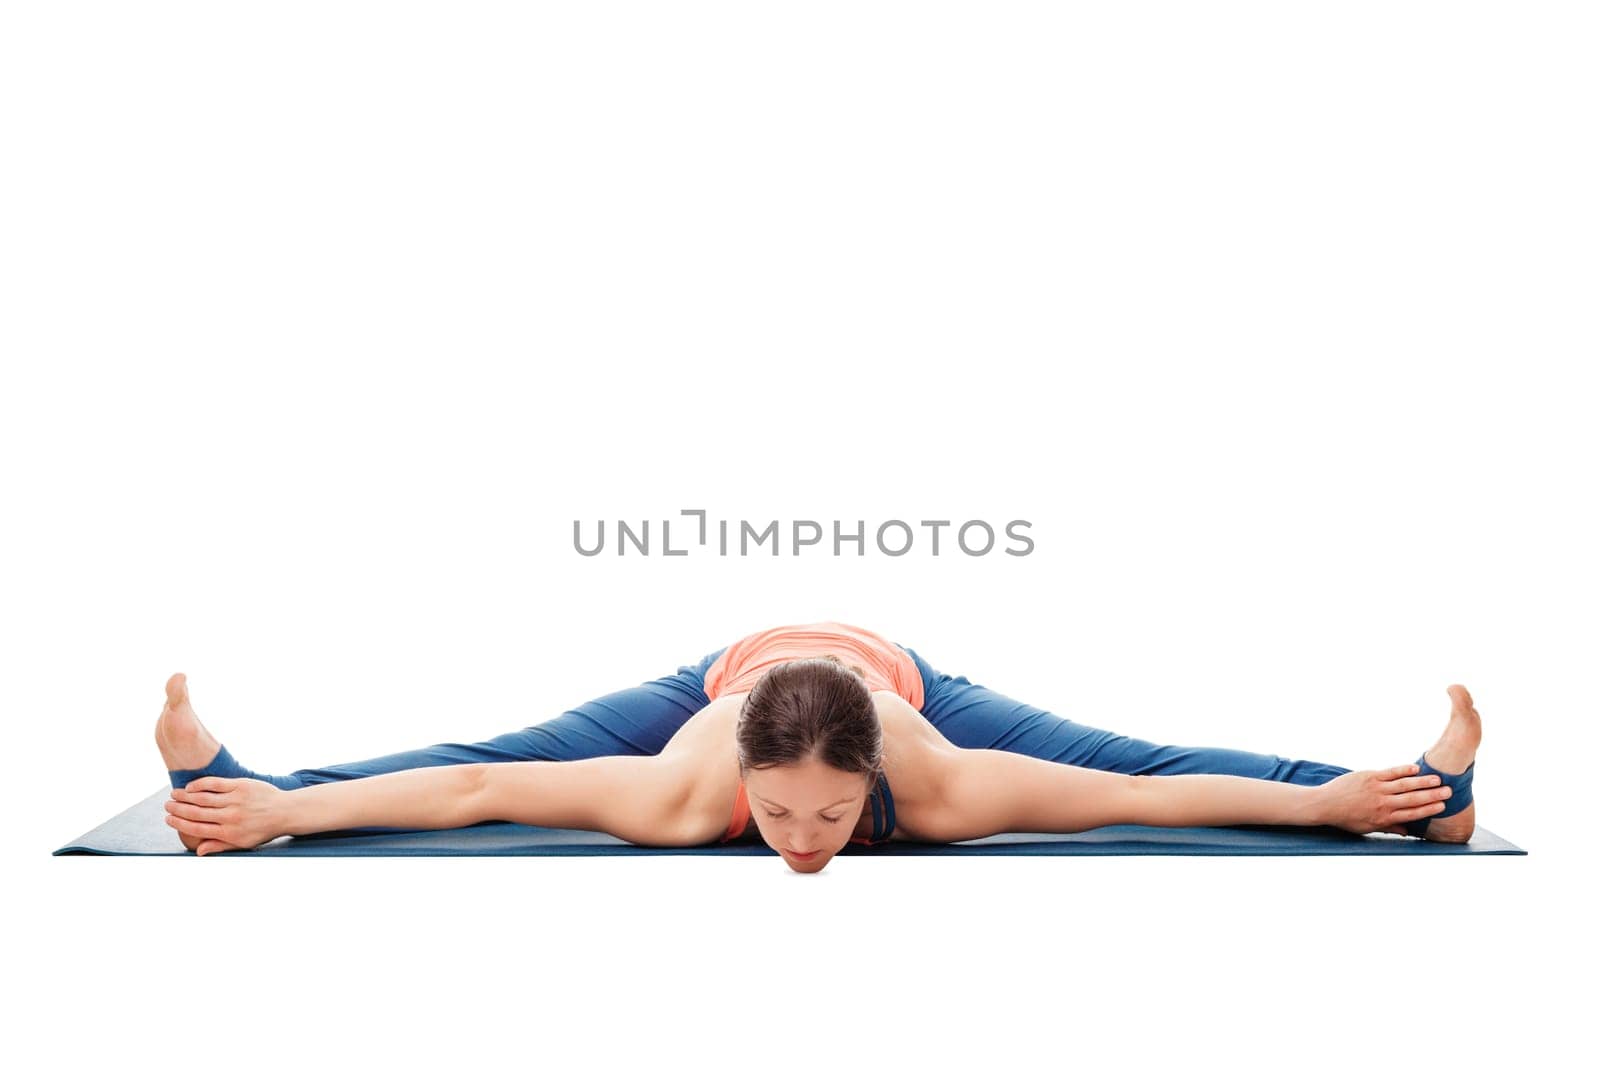 Woman doing Ashtanga Vinyasa Yoga asana Upavistha konasana - wide angle seated forward bend isolated on white background